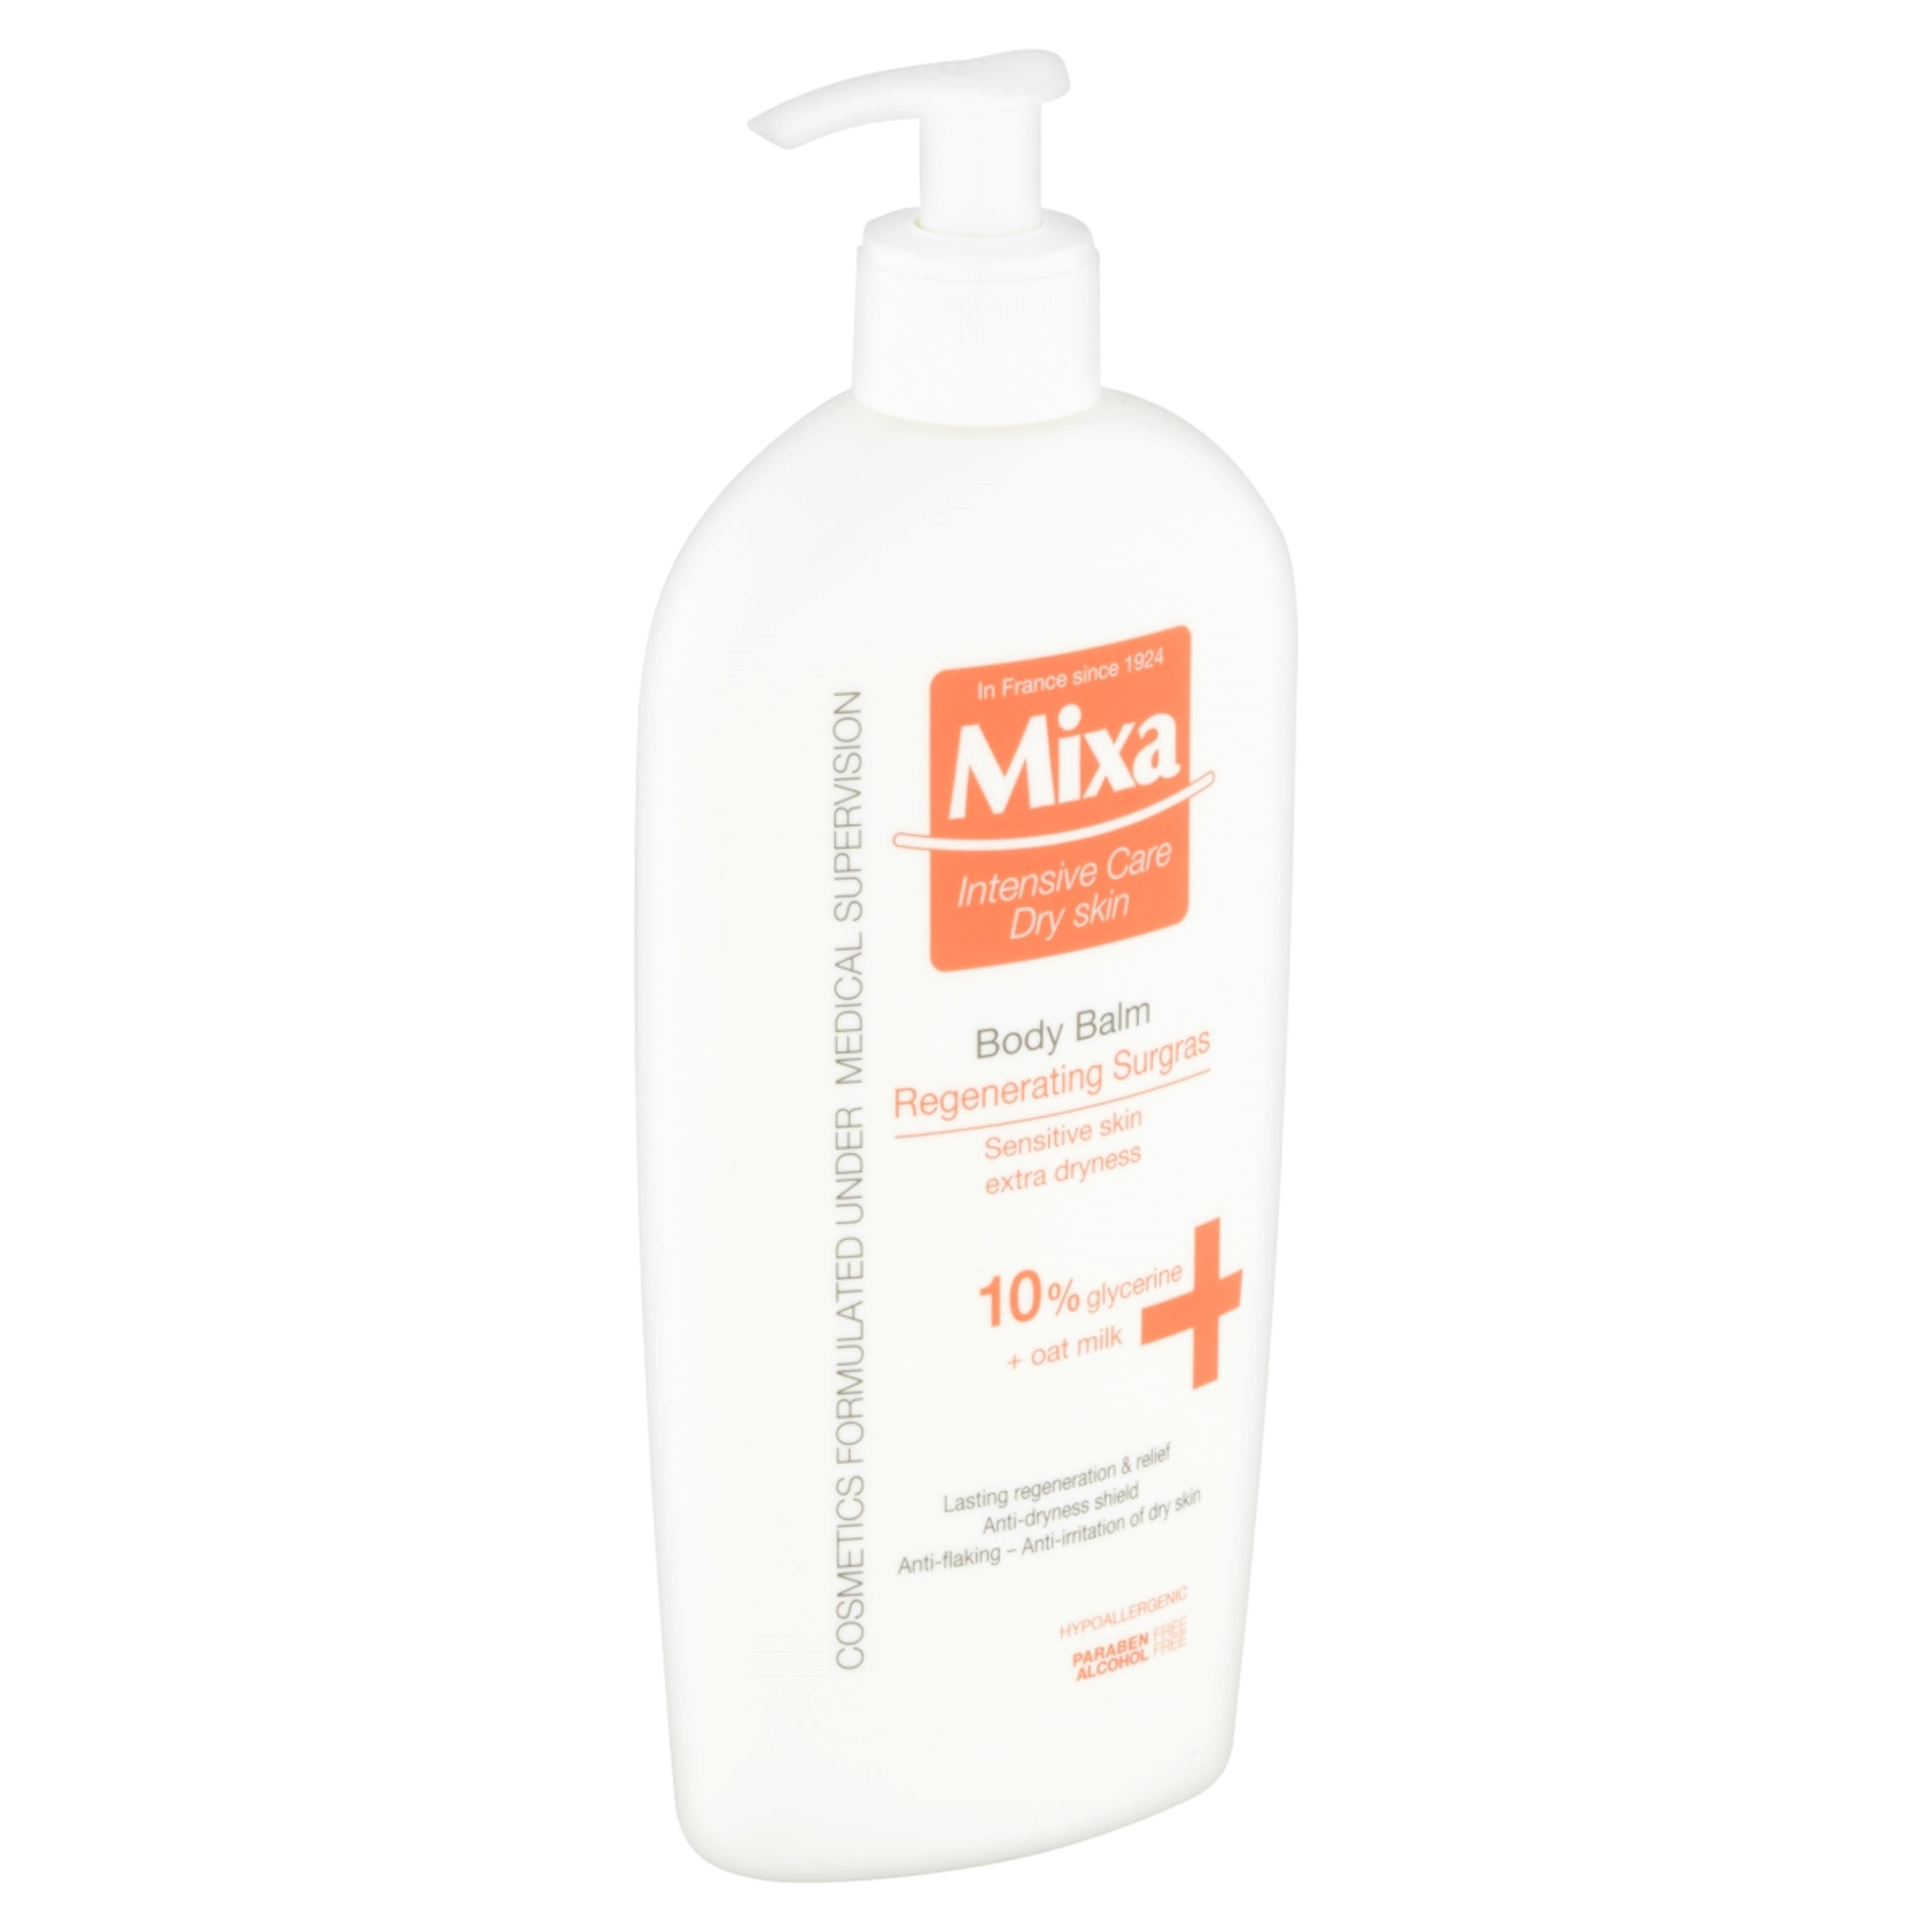 Mixa Regenerating Surgras testápoló tej - 400 ml-3